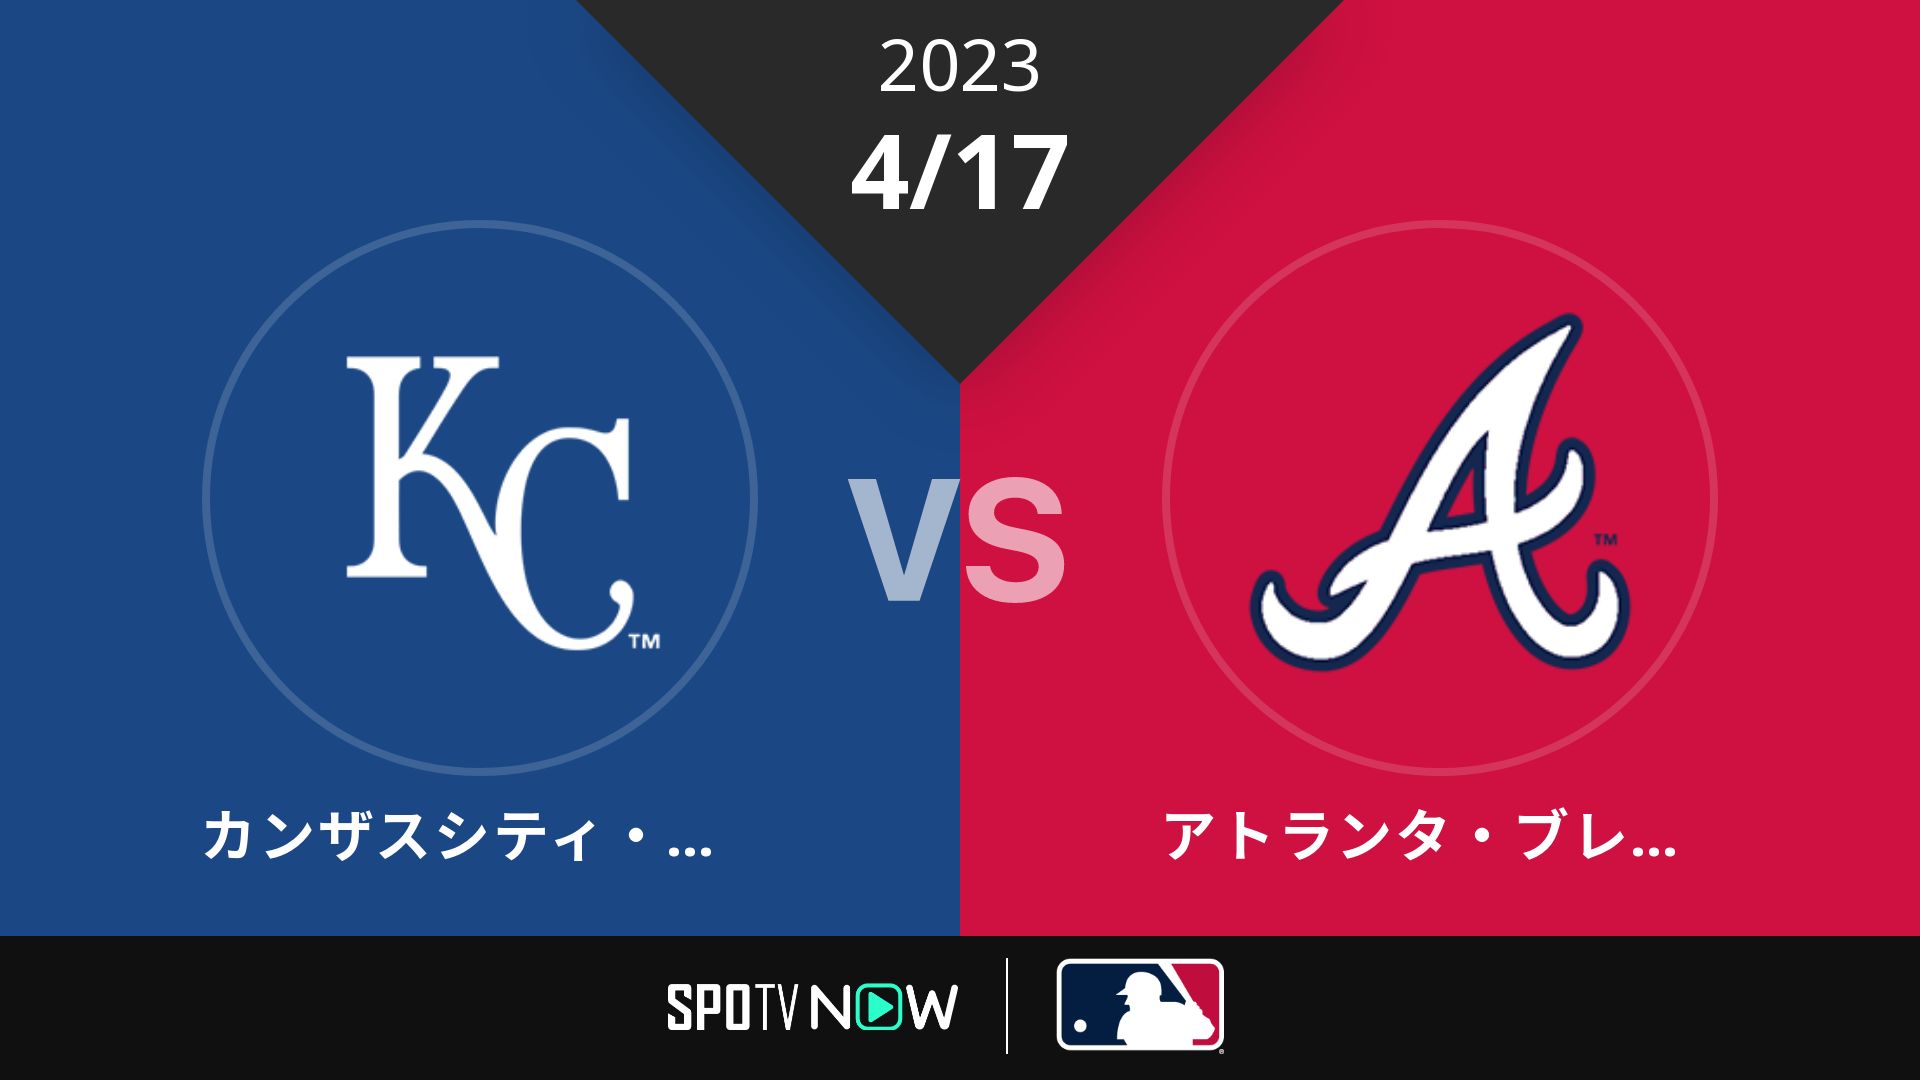 2023/4/17 ロイヤルズ vs ブレーブス [MLB]